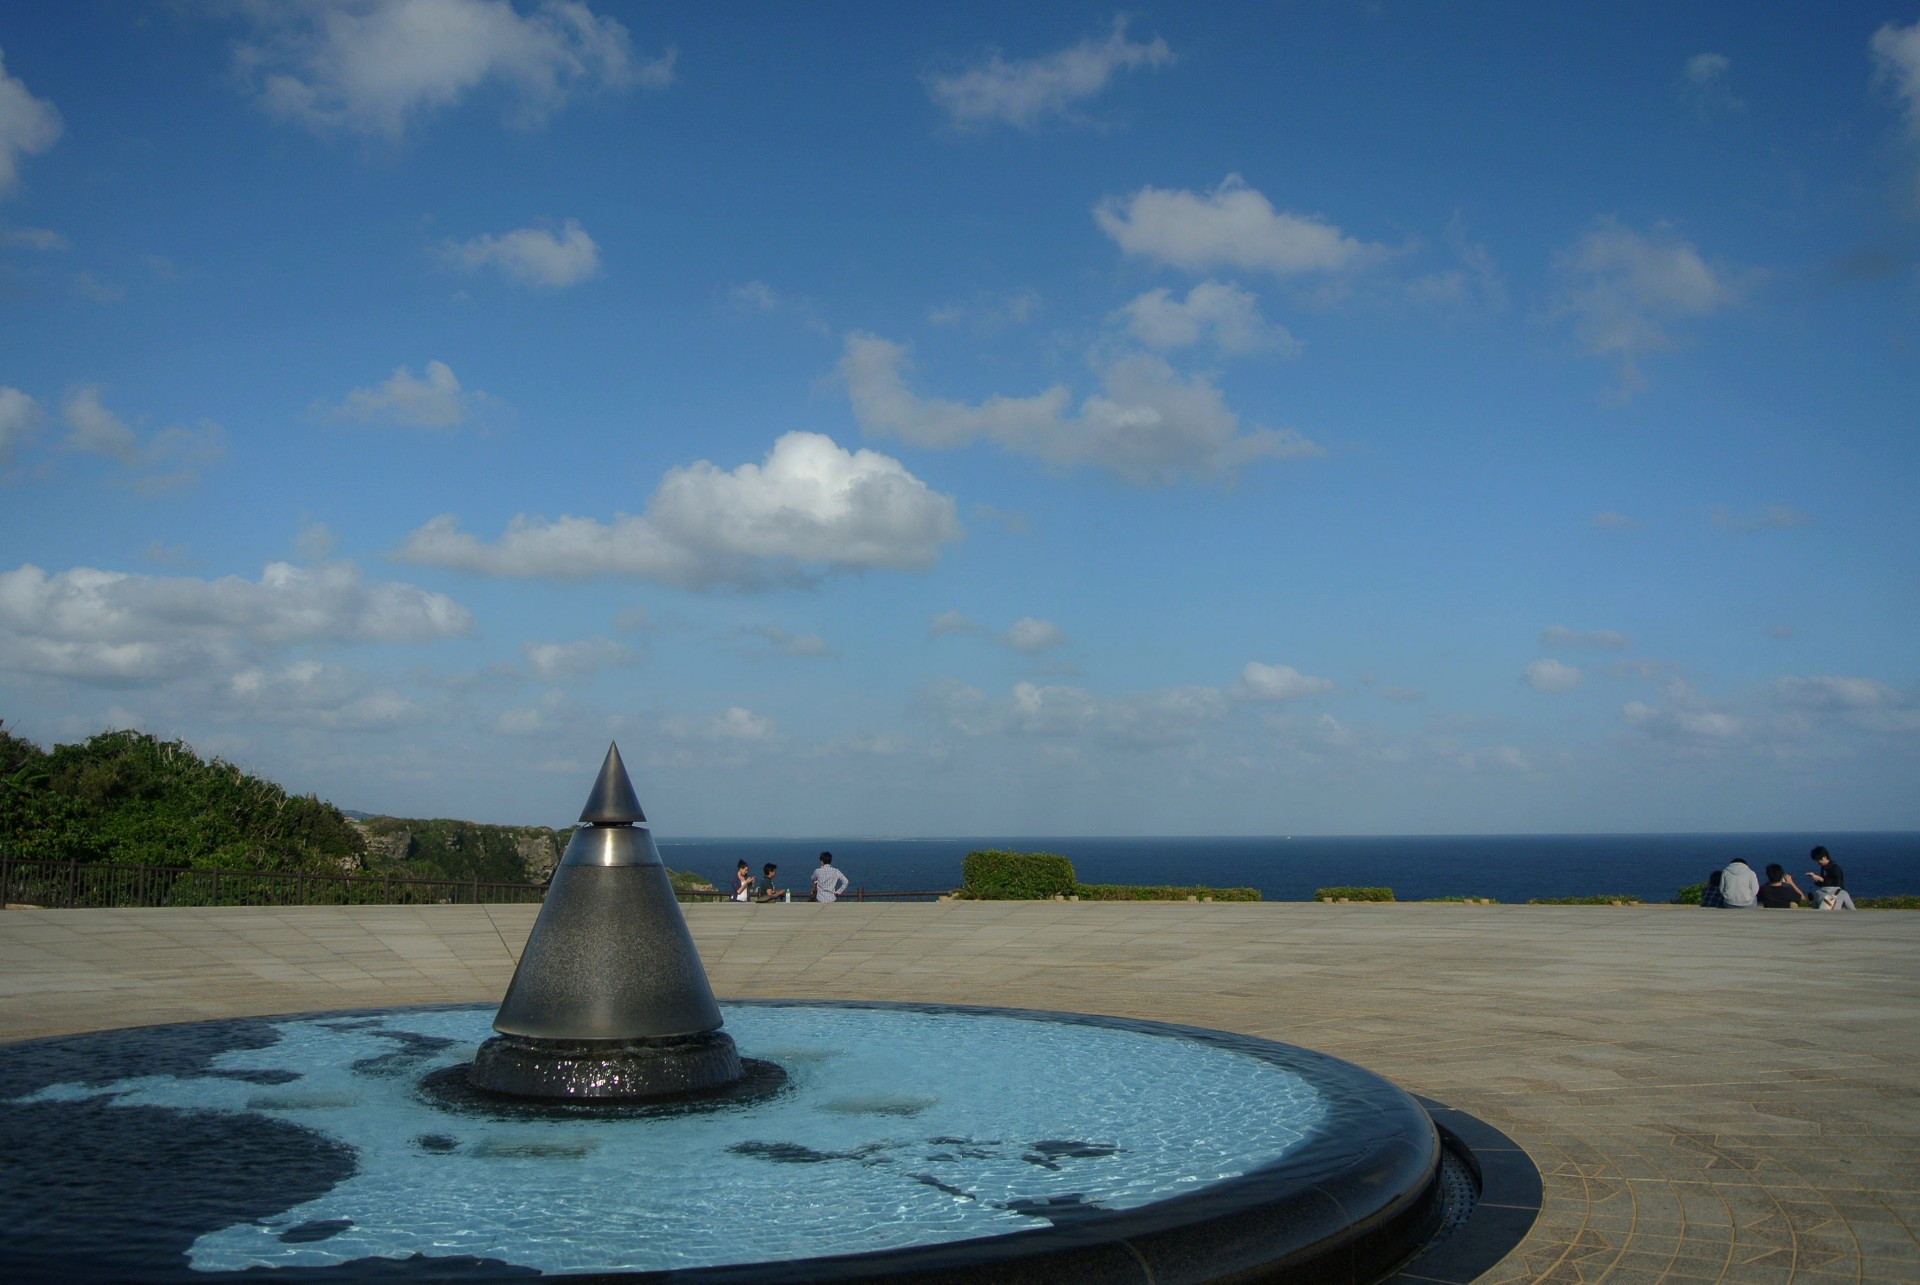 okinawa peace memorial place free photo